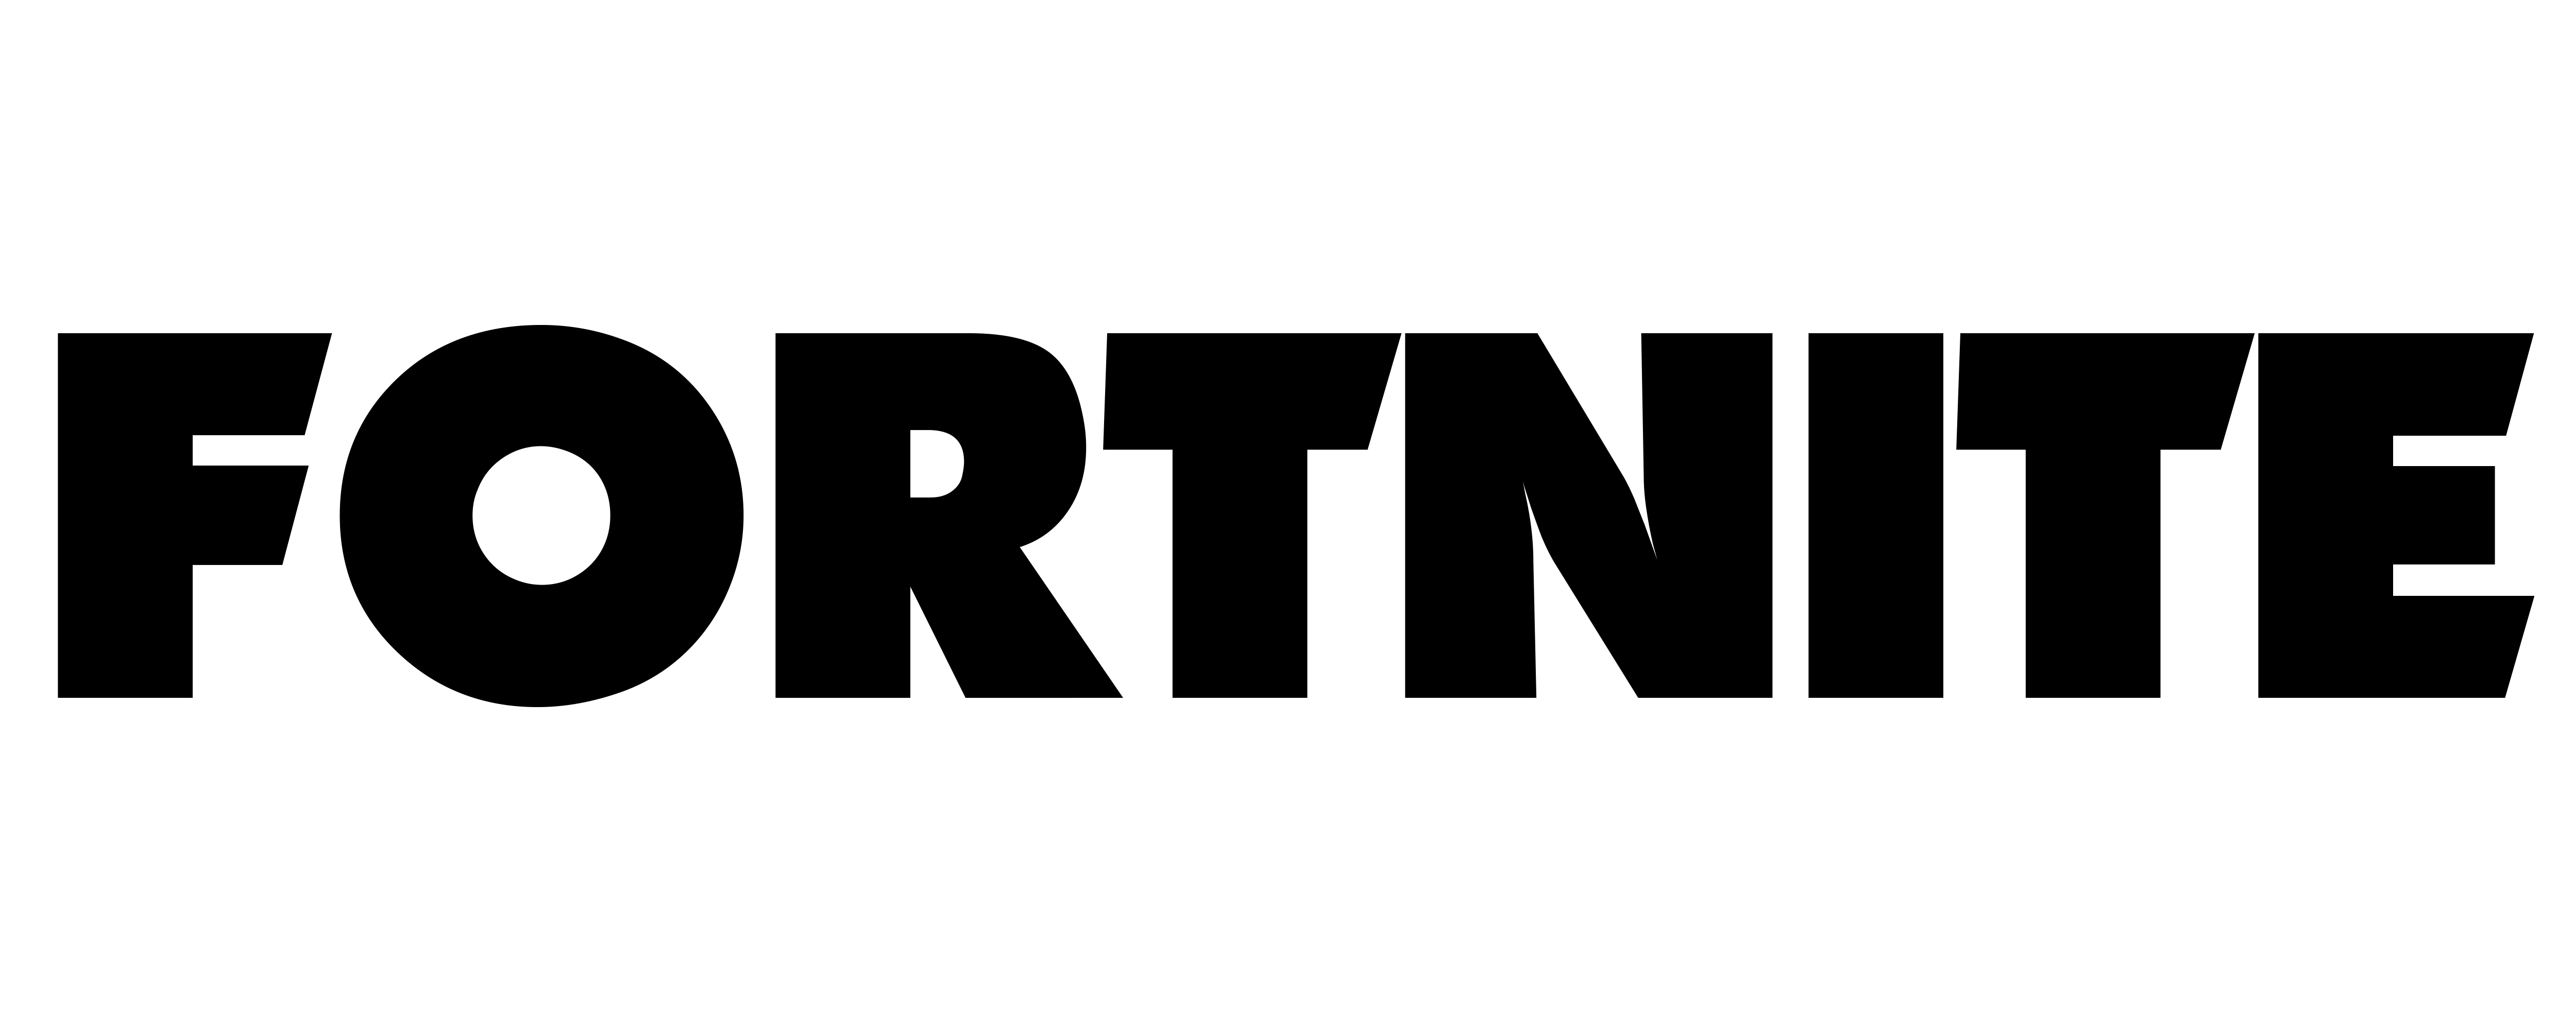 Fortnite Battle Royale Logo PNG image